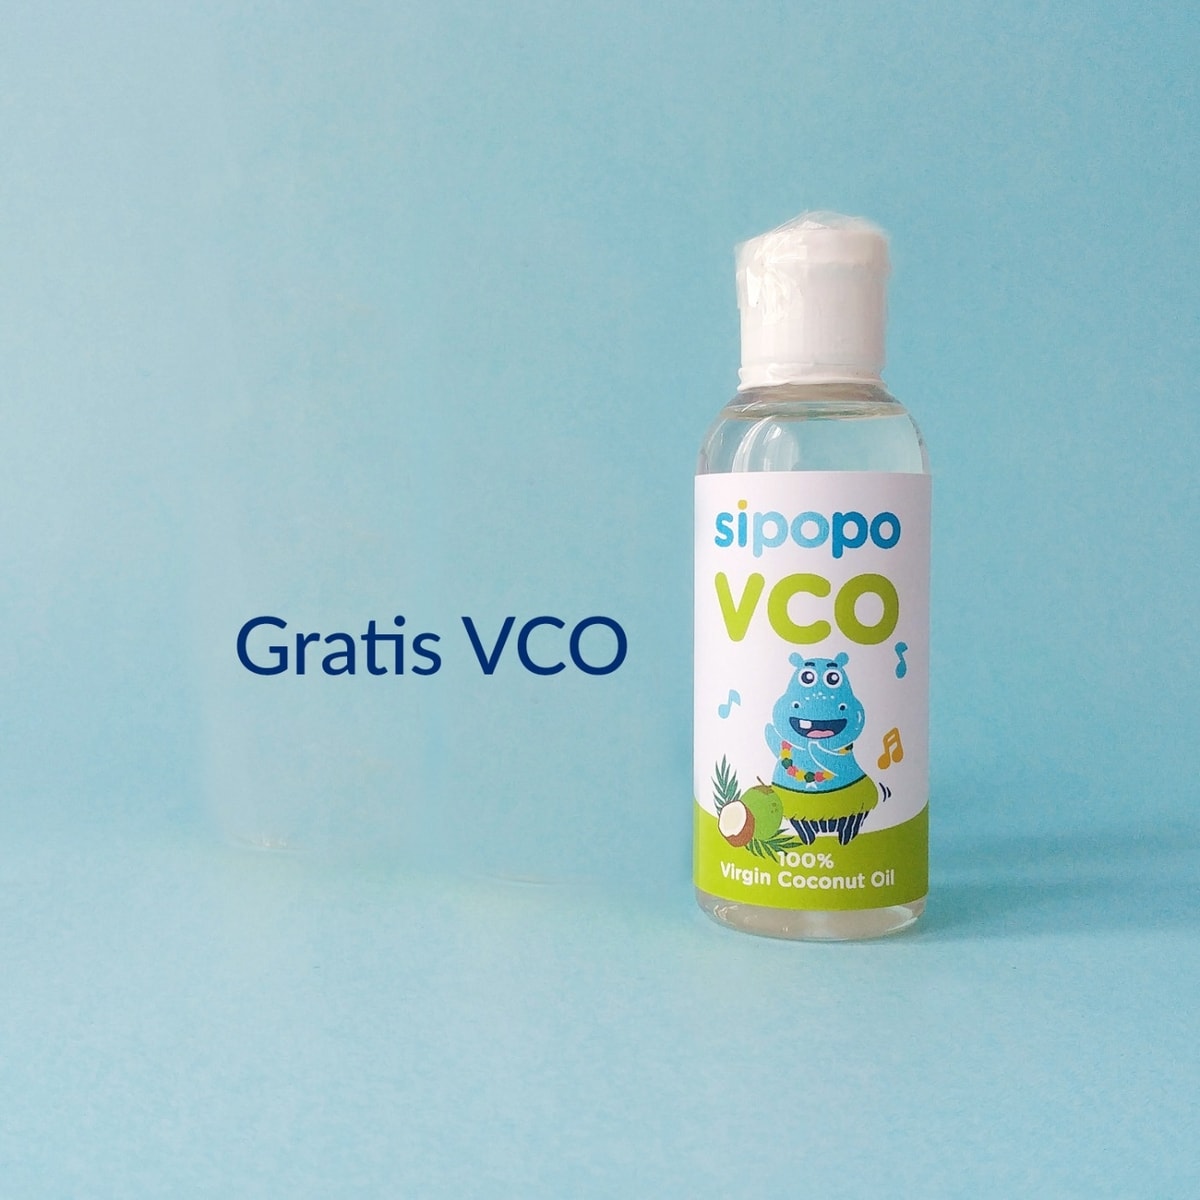 Gratis VCO setiap pembelian Sipopo Oil.
VCO bisa digunakan sebagai campuran Sipopo Oil sebelum dioleskan ke bagian tubuh.